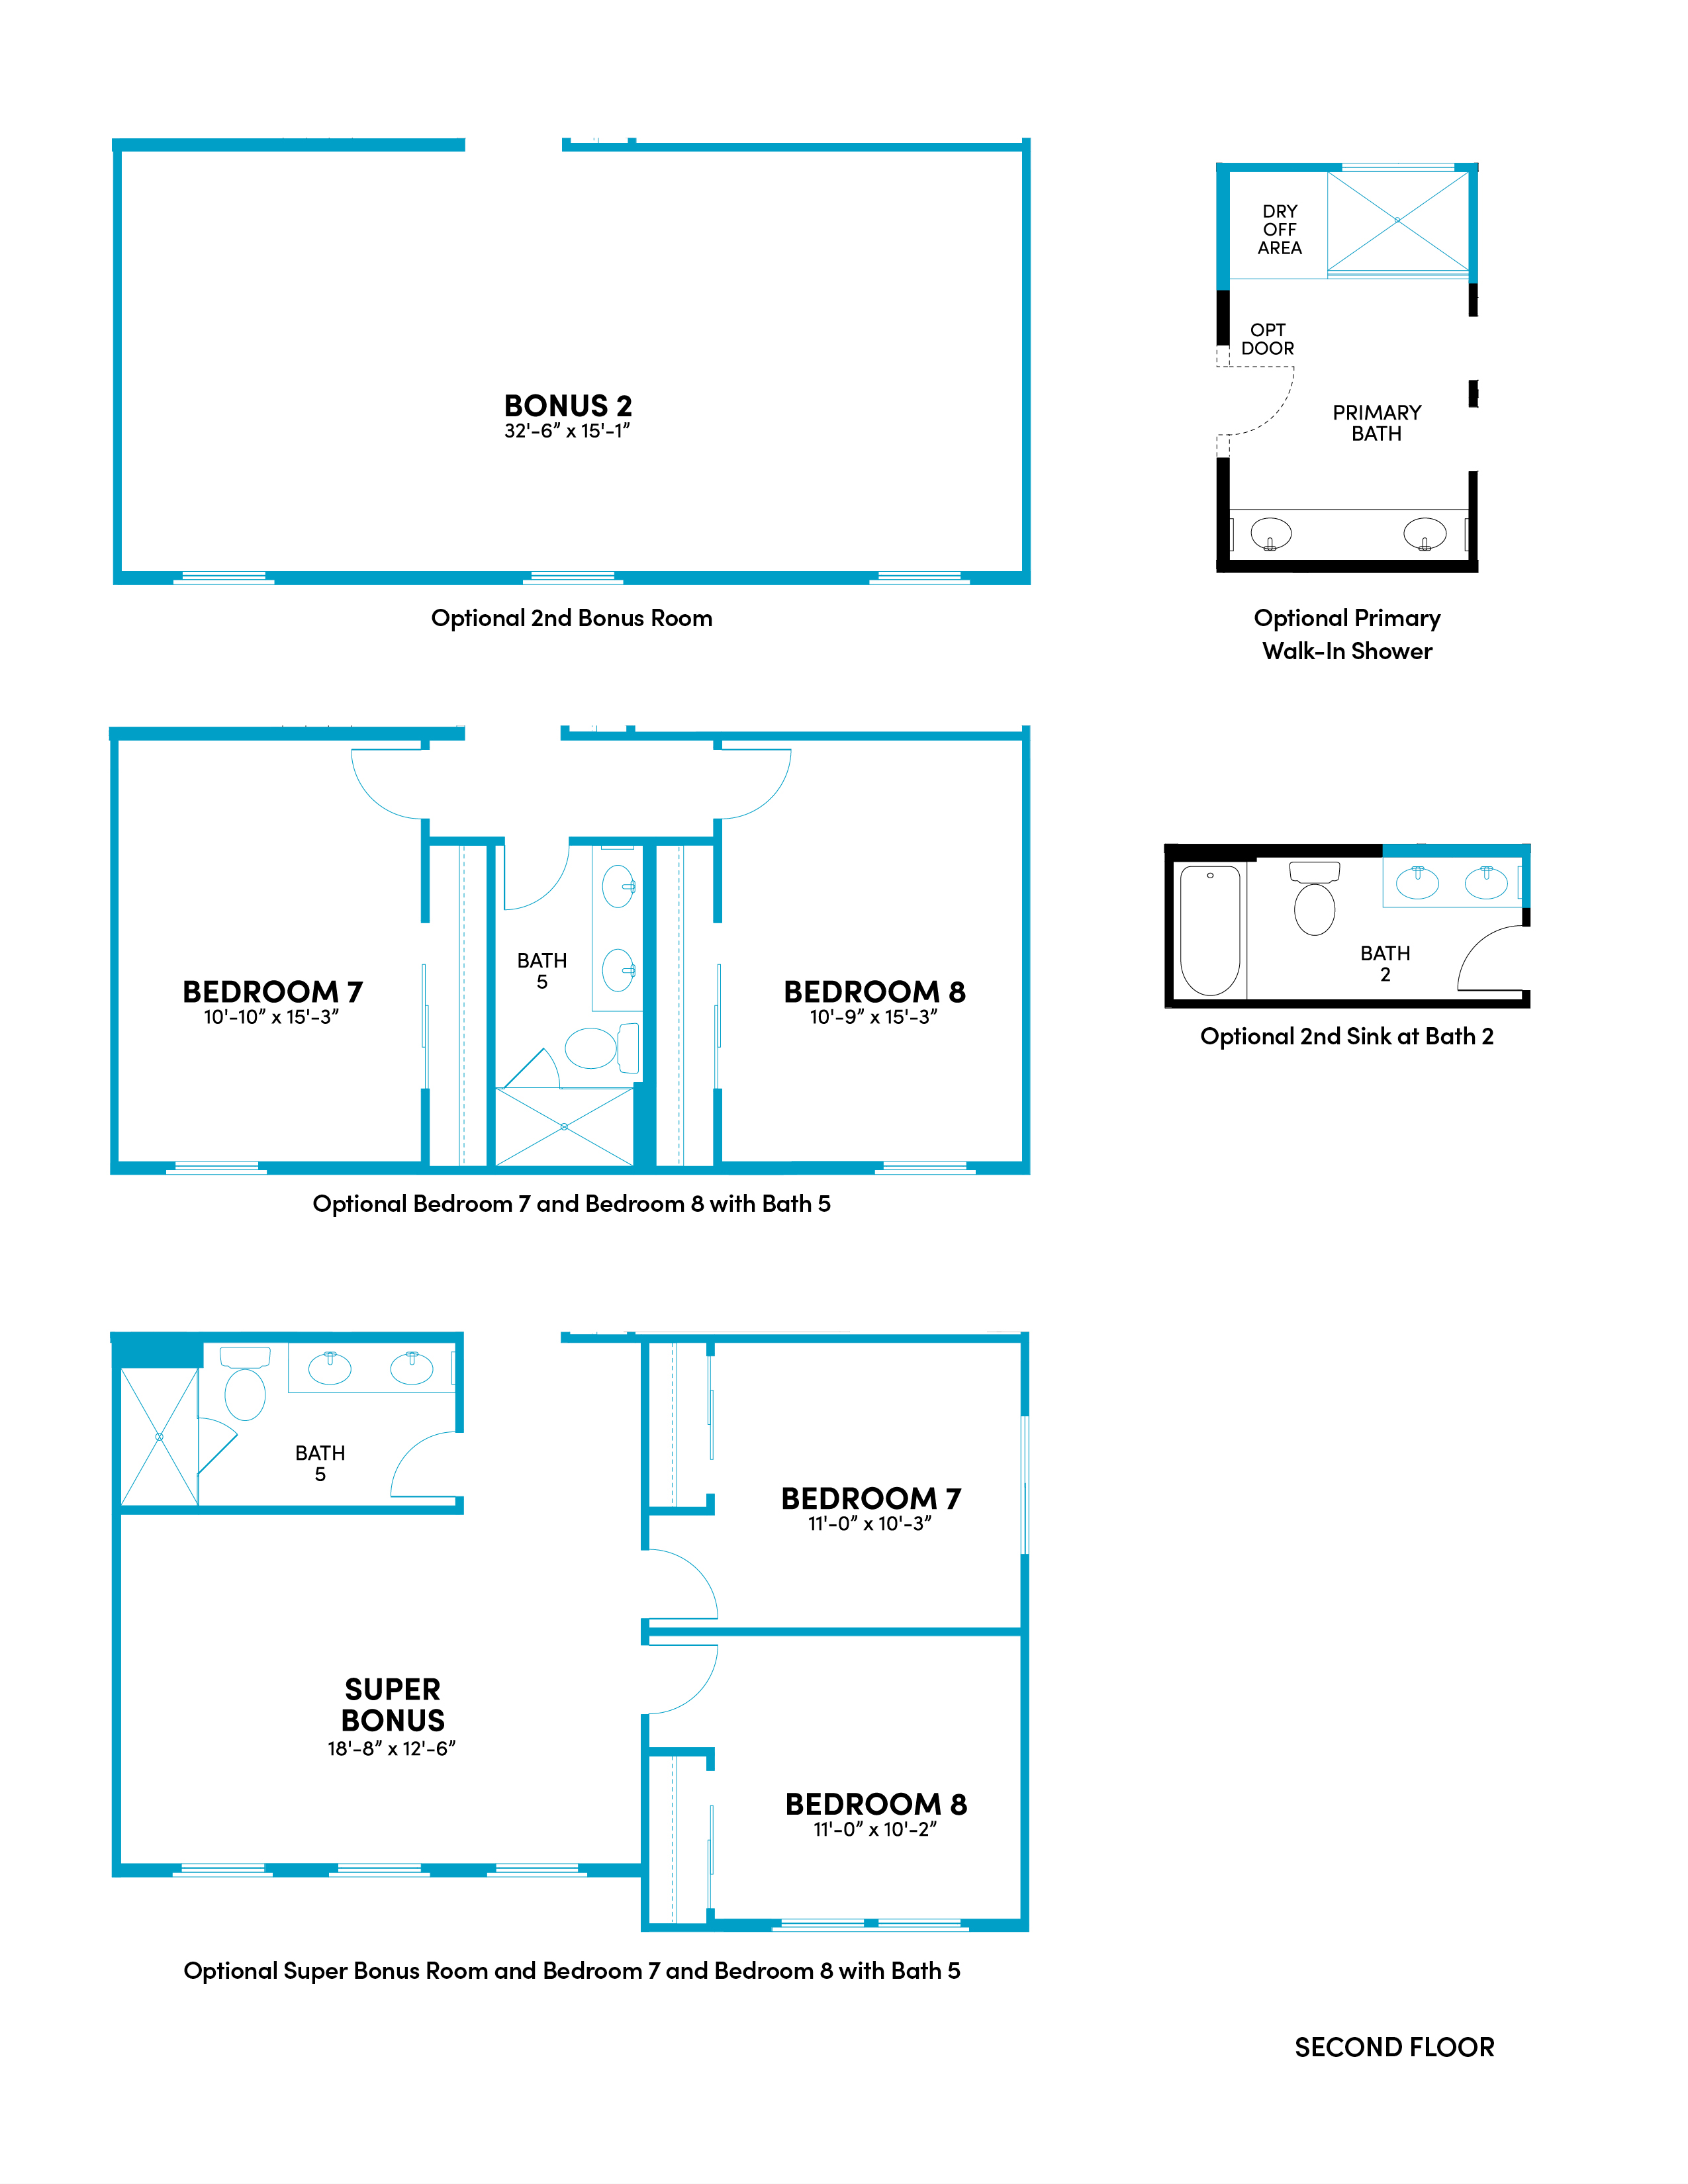 Brookfield Residential Blossom Rock Mariposa Skylar Floor Plan Second Floor Options.